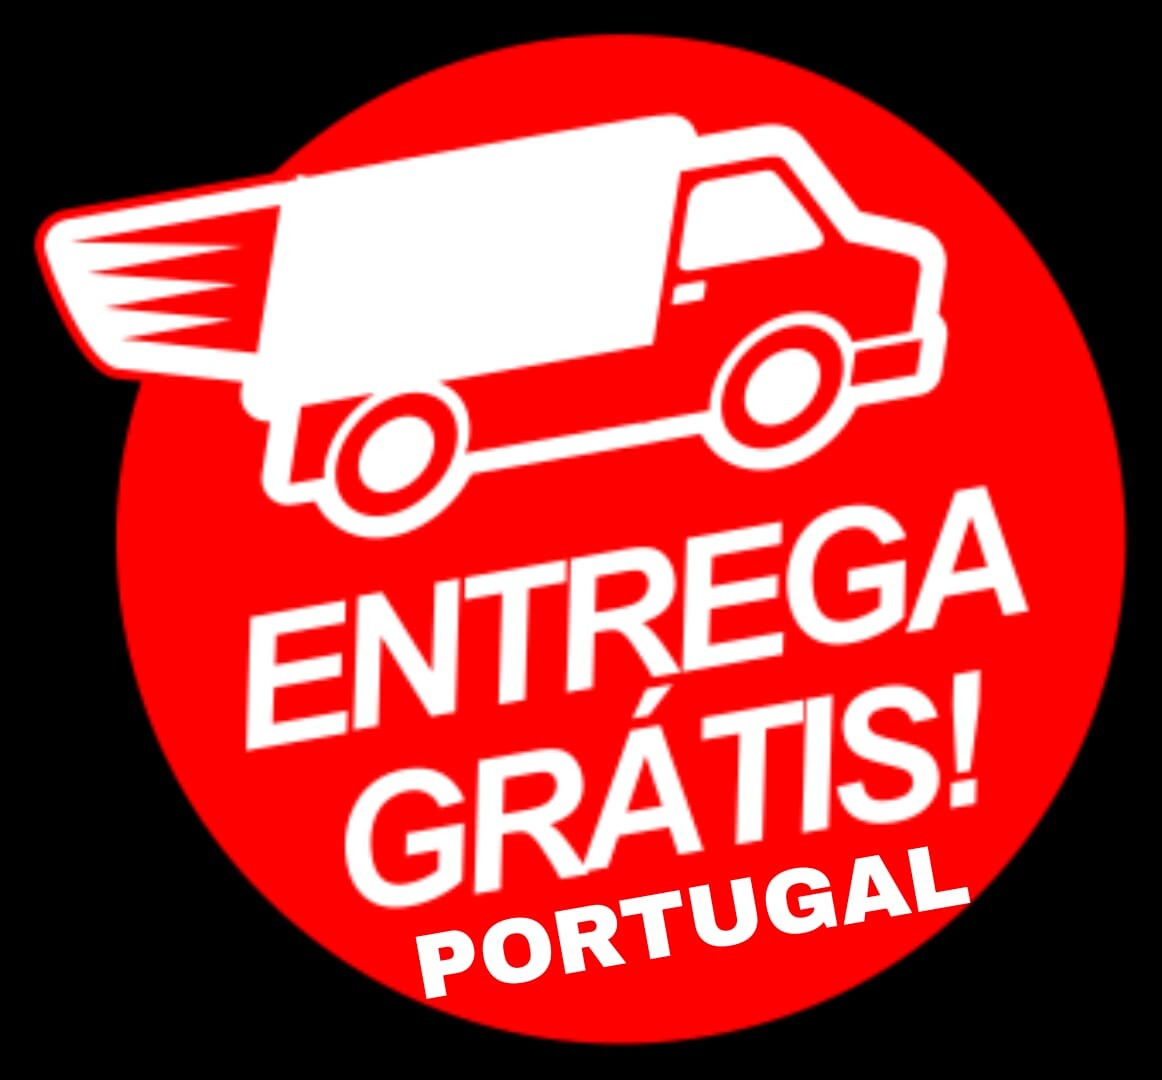 Entrega grátis Portugal